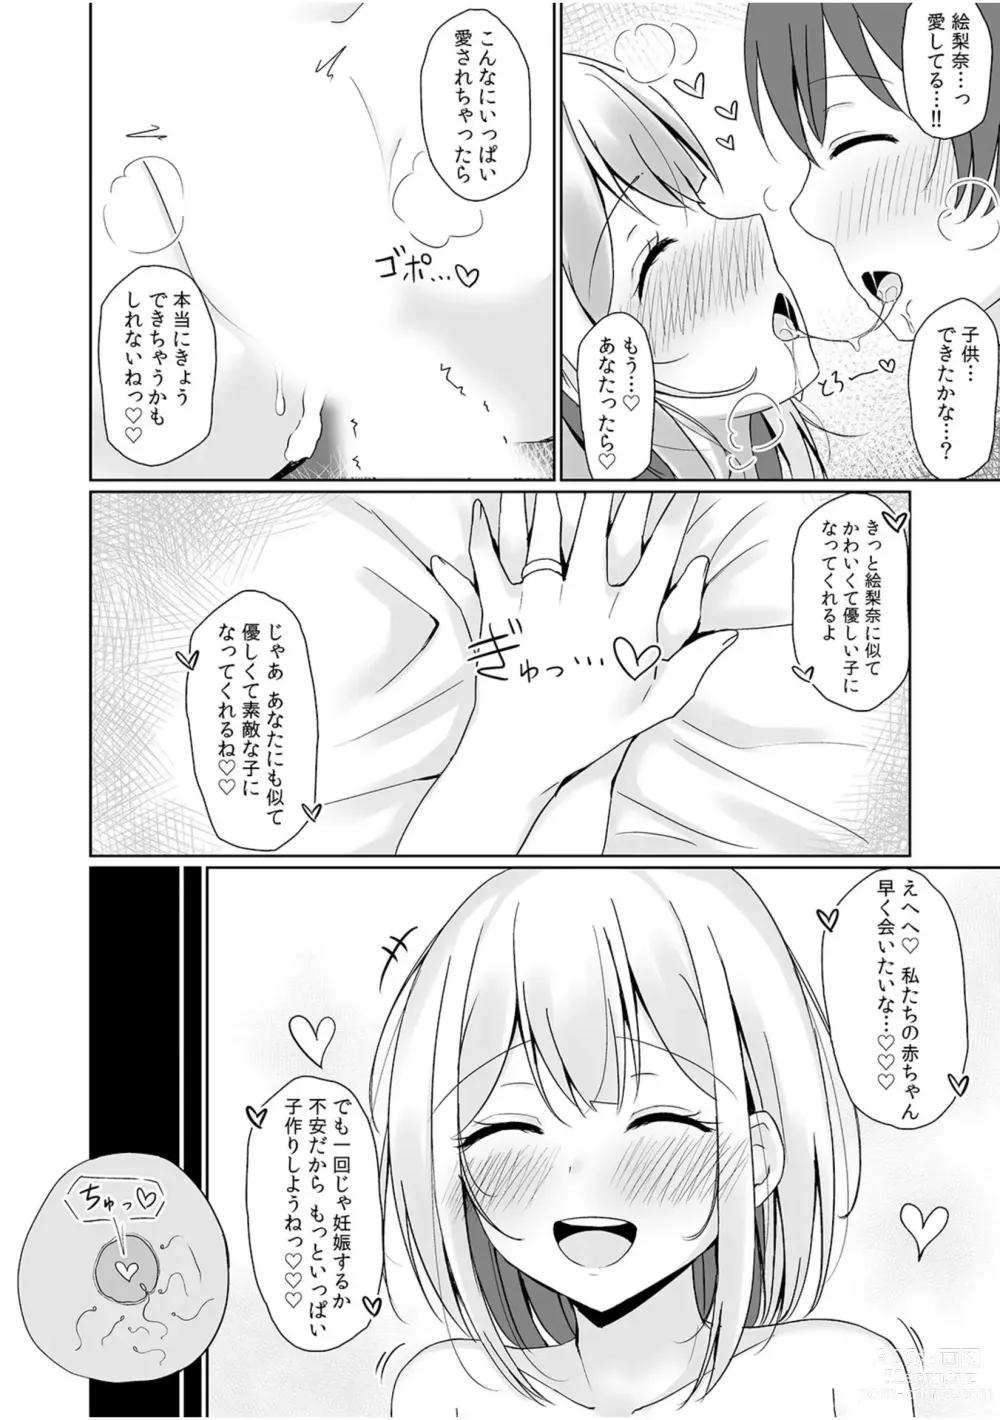 Page 80 of manga 「Zettai ni kimi o hanasanai」Aishi au 2-ri wa nando mo hageshiku…